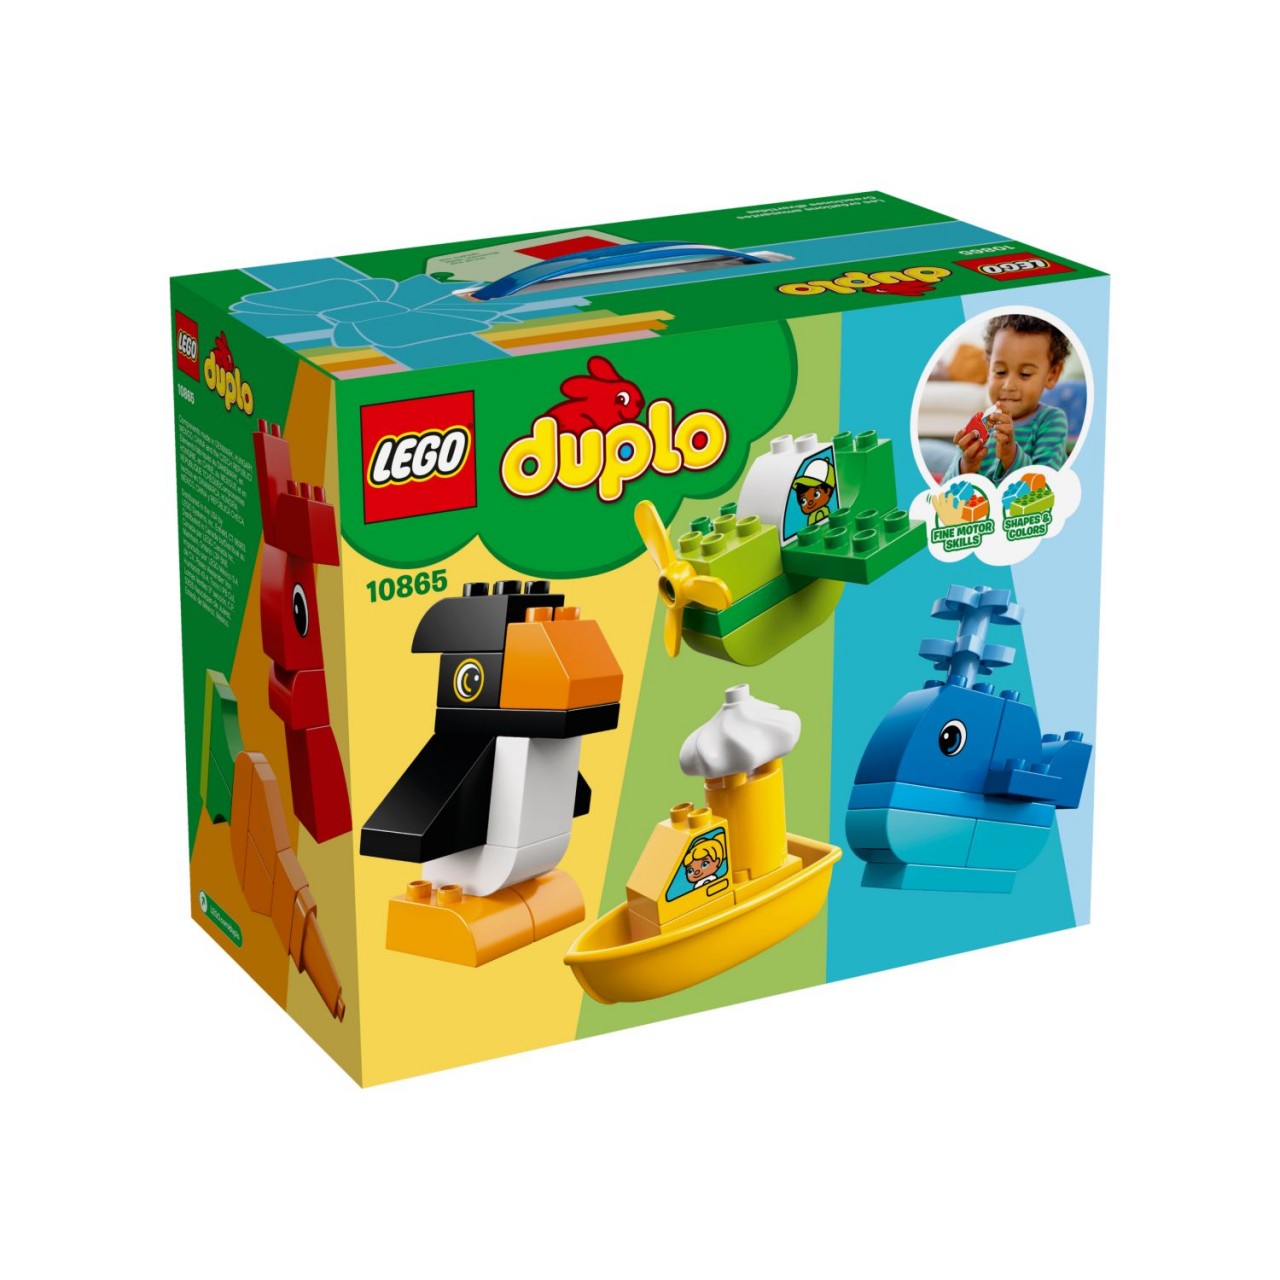 LEGO DUPLO 10865 Witzige Modelle